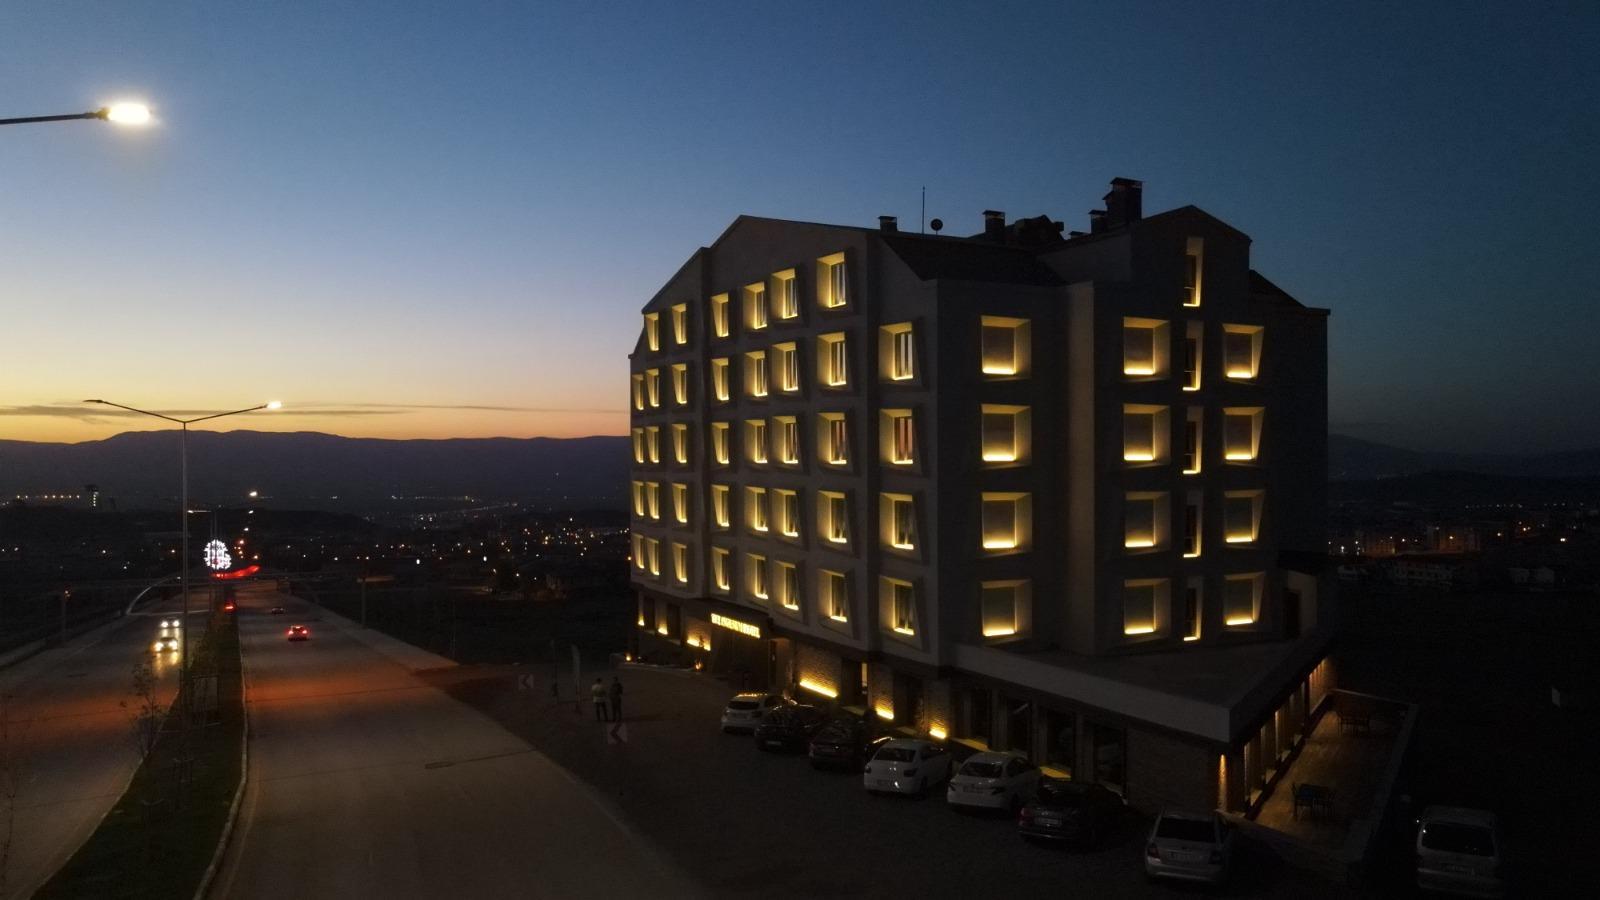 The Erzurum Hotel - Erzurum